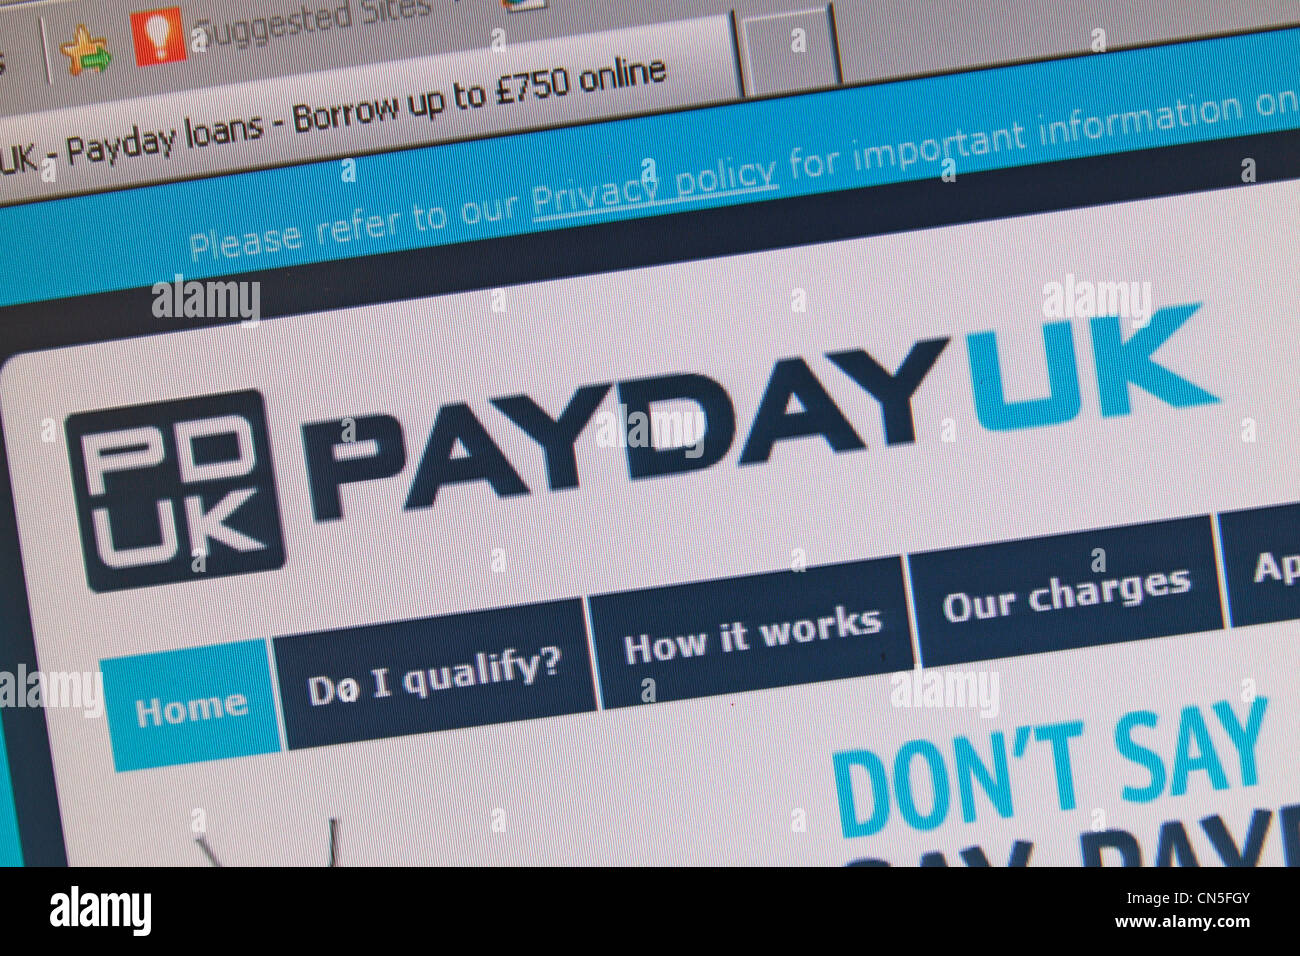 Una screenshot del PayDay UK sito web e il logo, un payday loan company NEL REGNO UNITO. Foto Stock